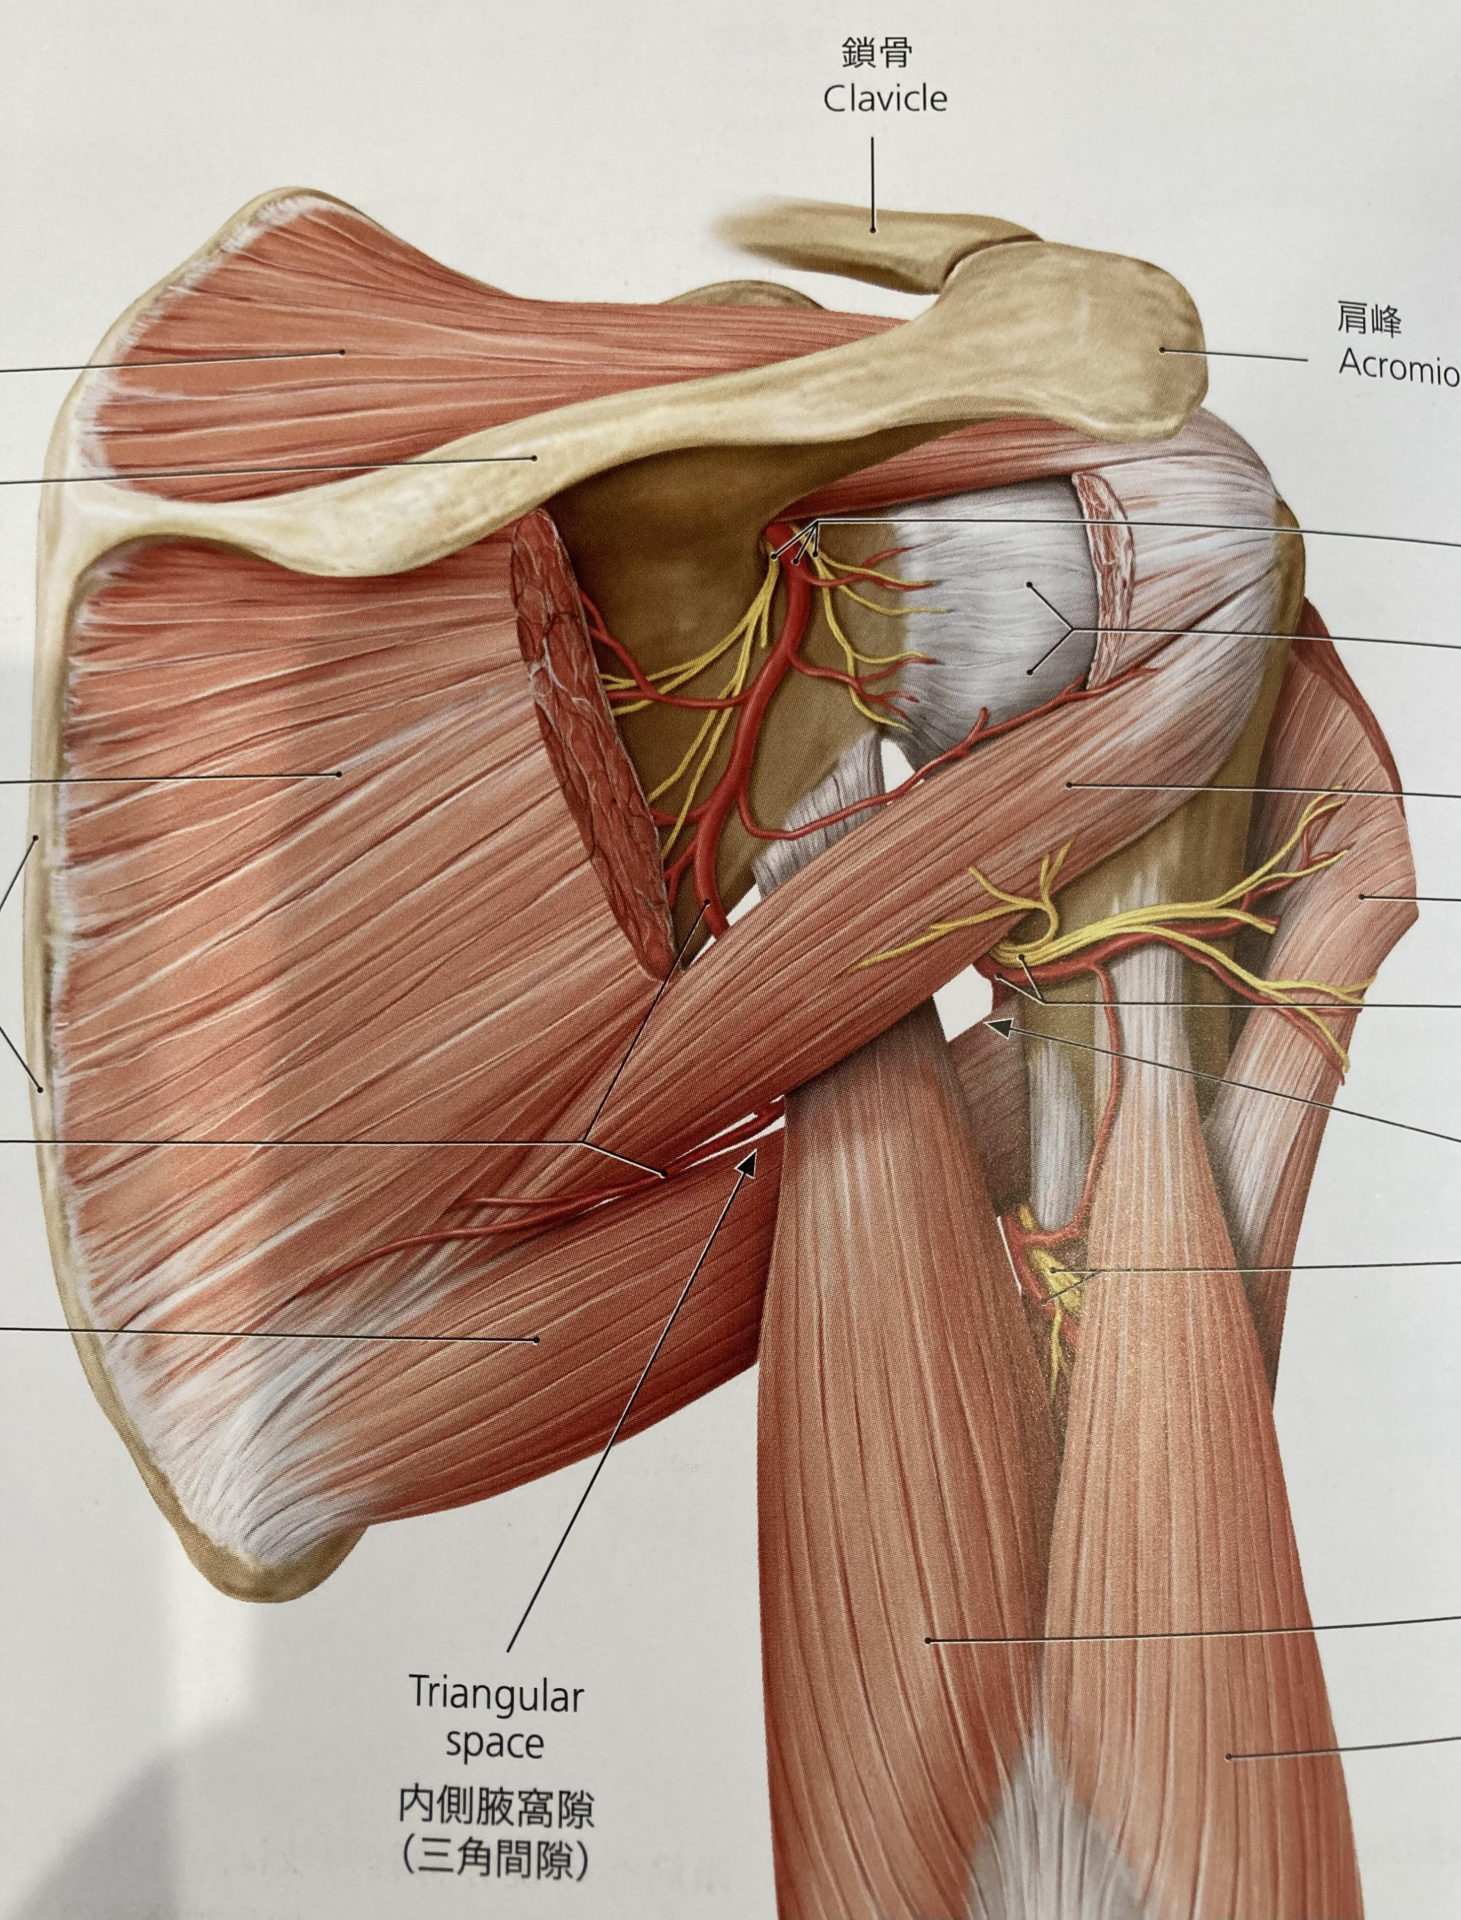 肩関節の解剖図